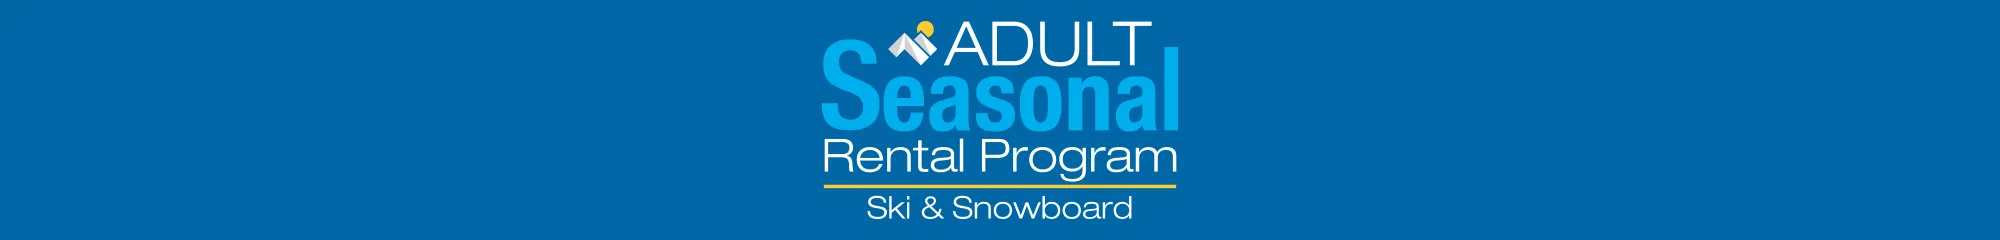 Adult Seasonal Rentals at Sun & Ski Sports